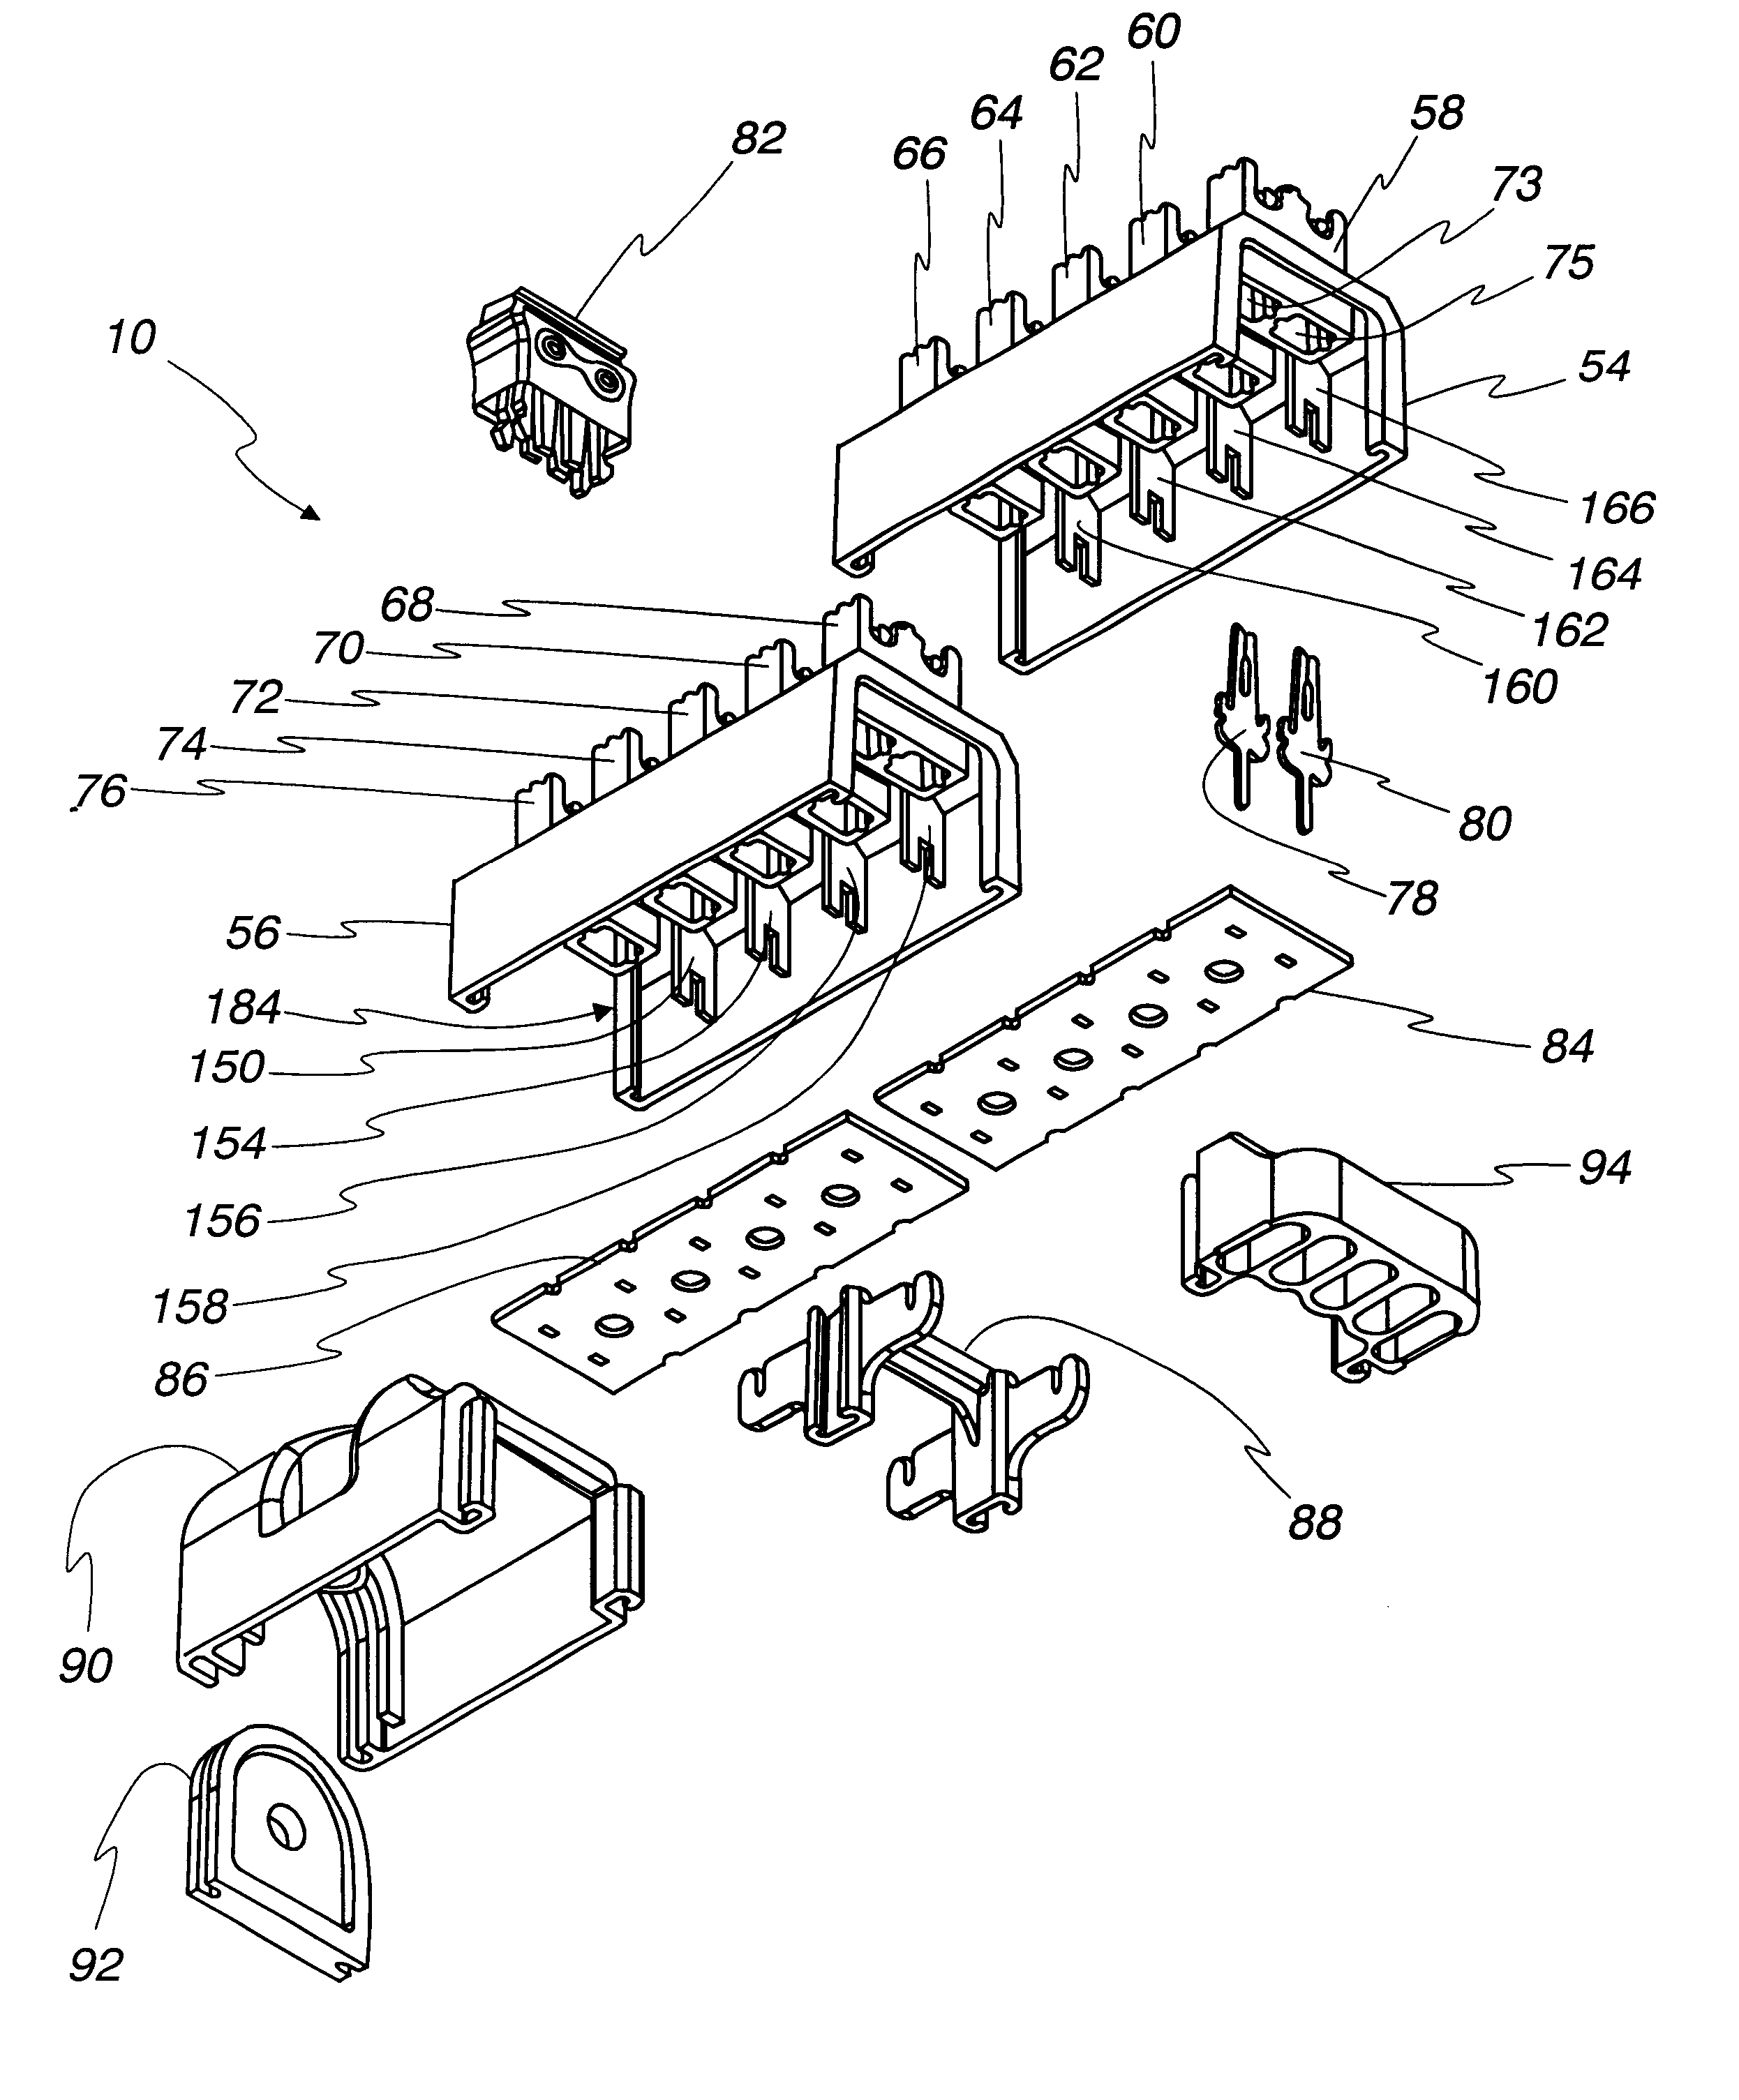 Modular terminal block assembly